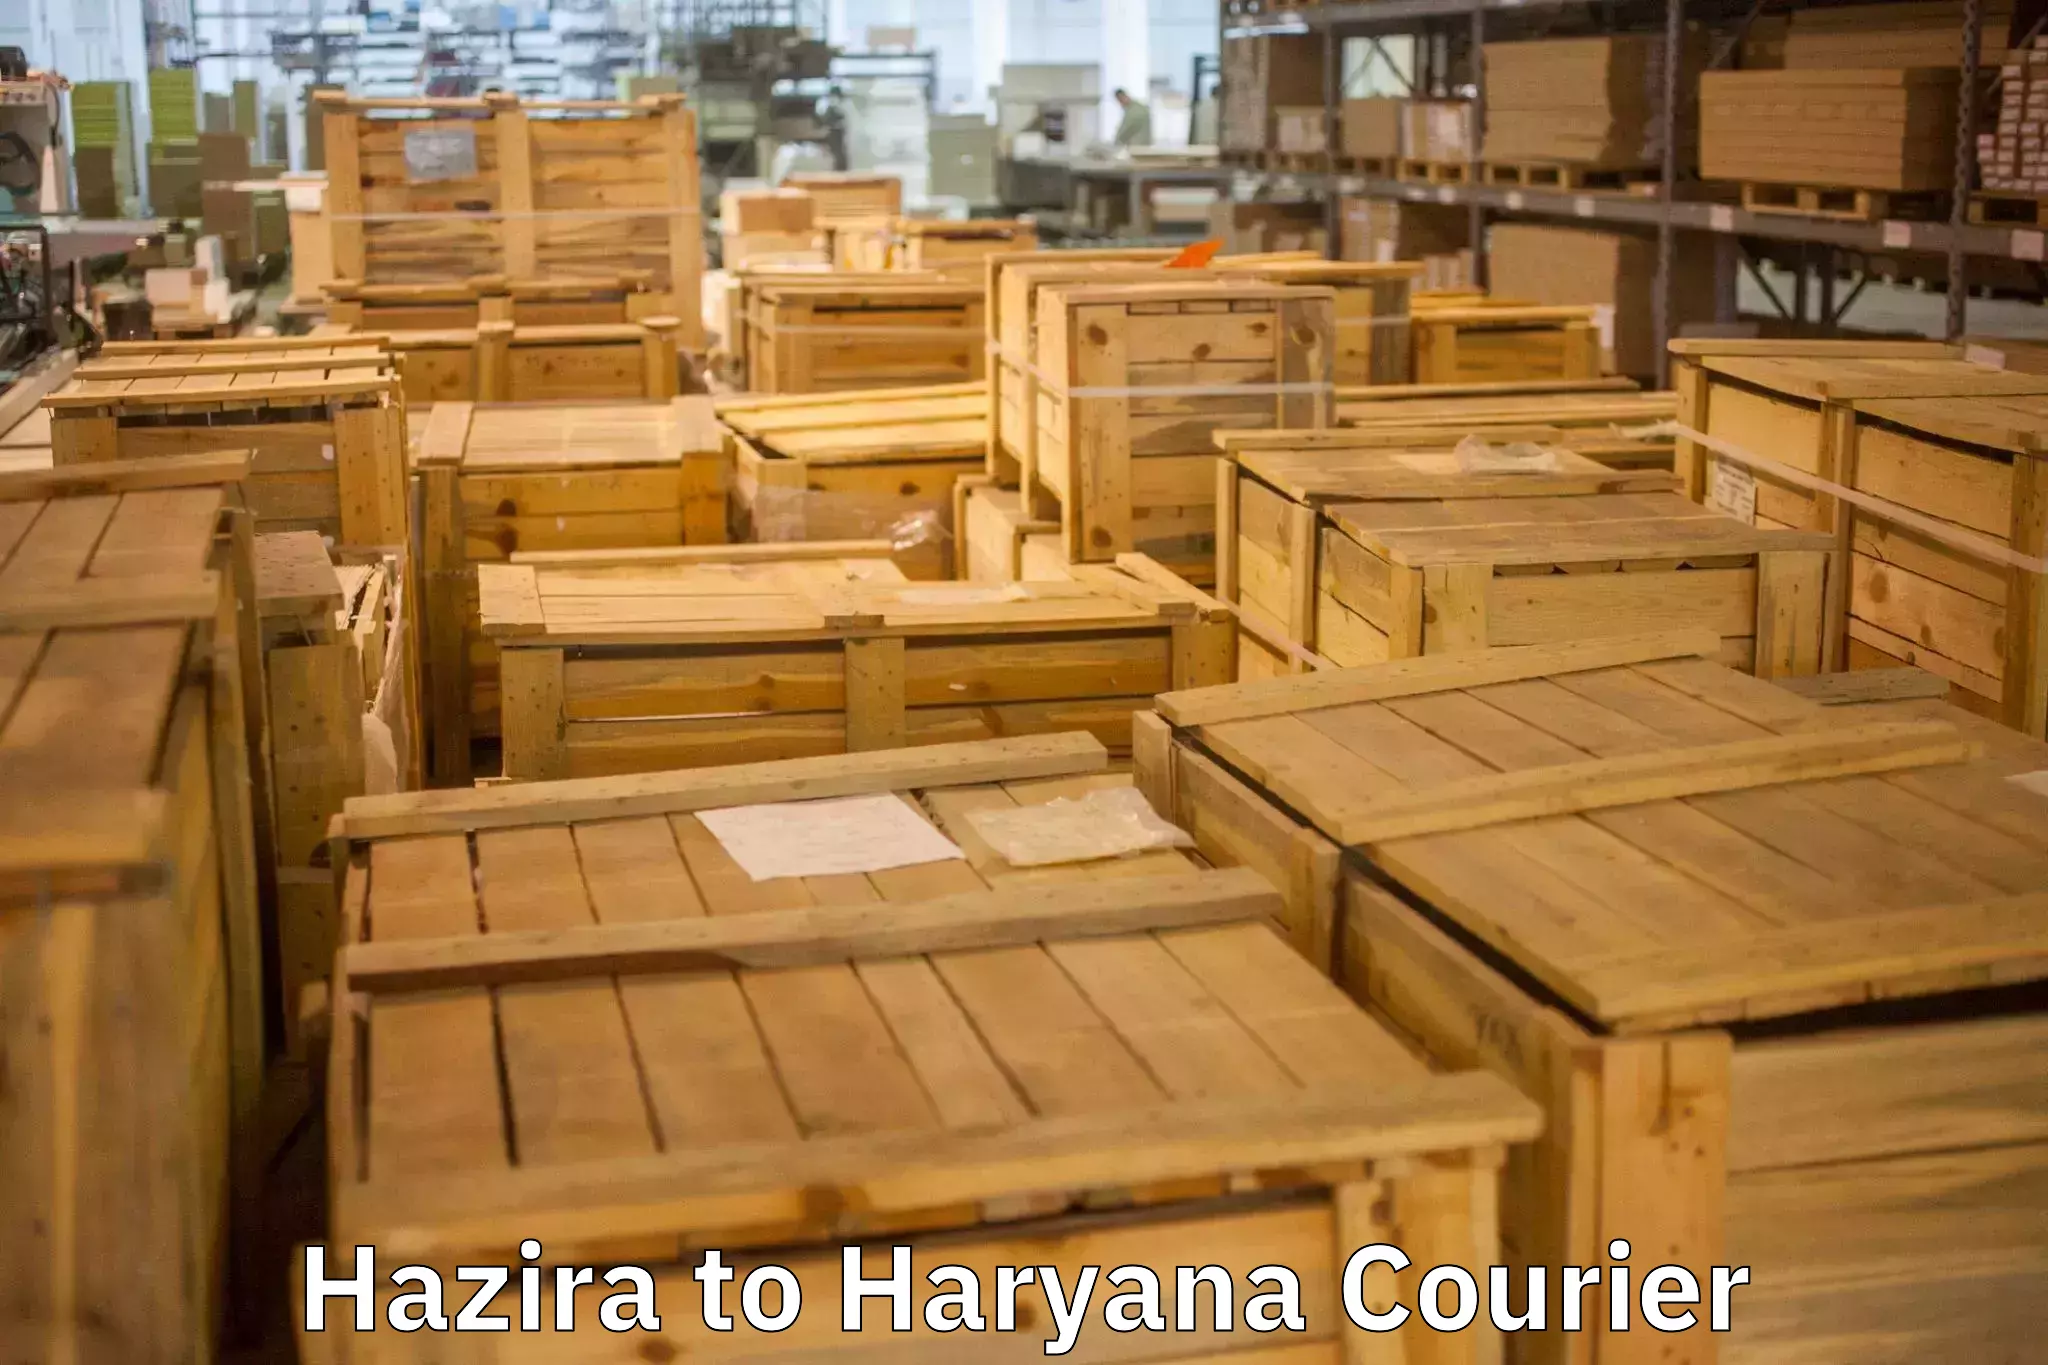 Furniture transport professionals Hazira to Chirya